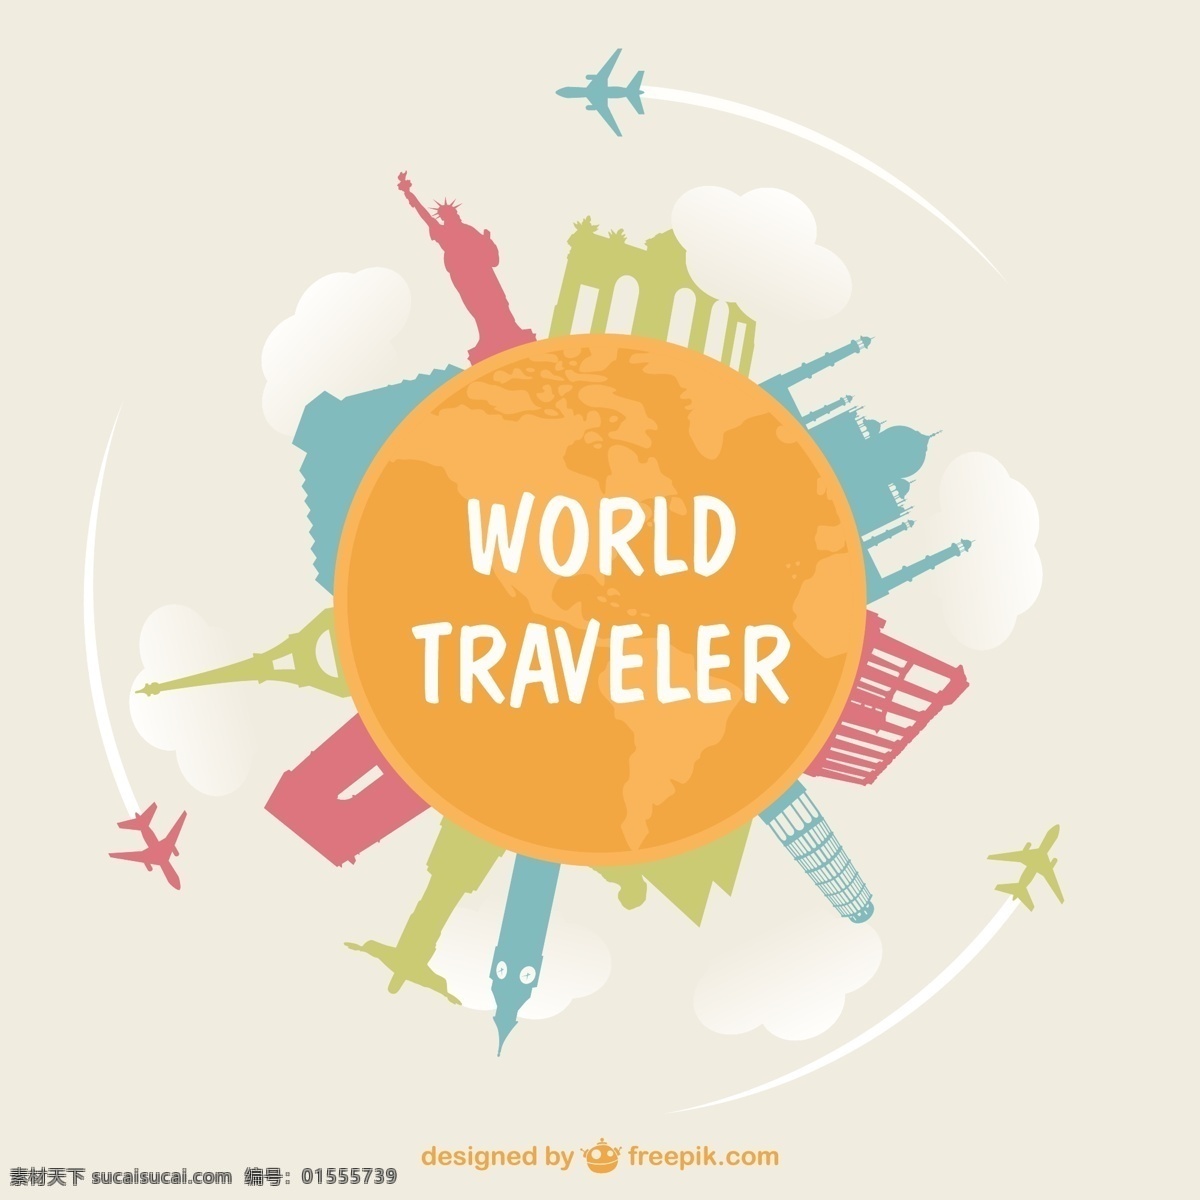 周游 世界 旅游 概念 插画 背景 暑期 模板 环球 飞机 美术 平面 印度 平面设计 假日 交通 意大利 全球 元素 白色